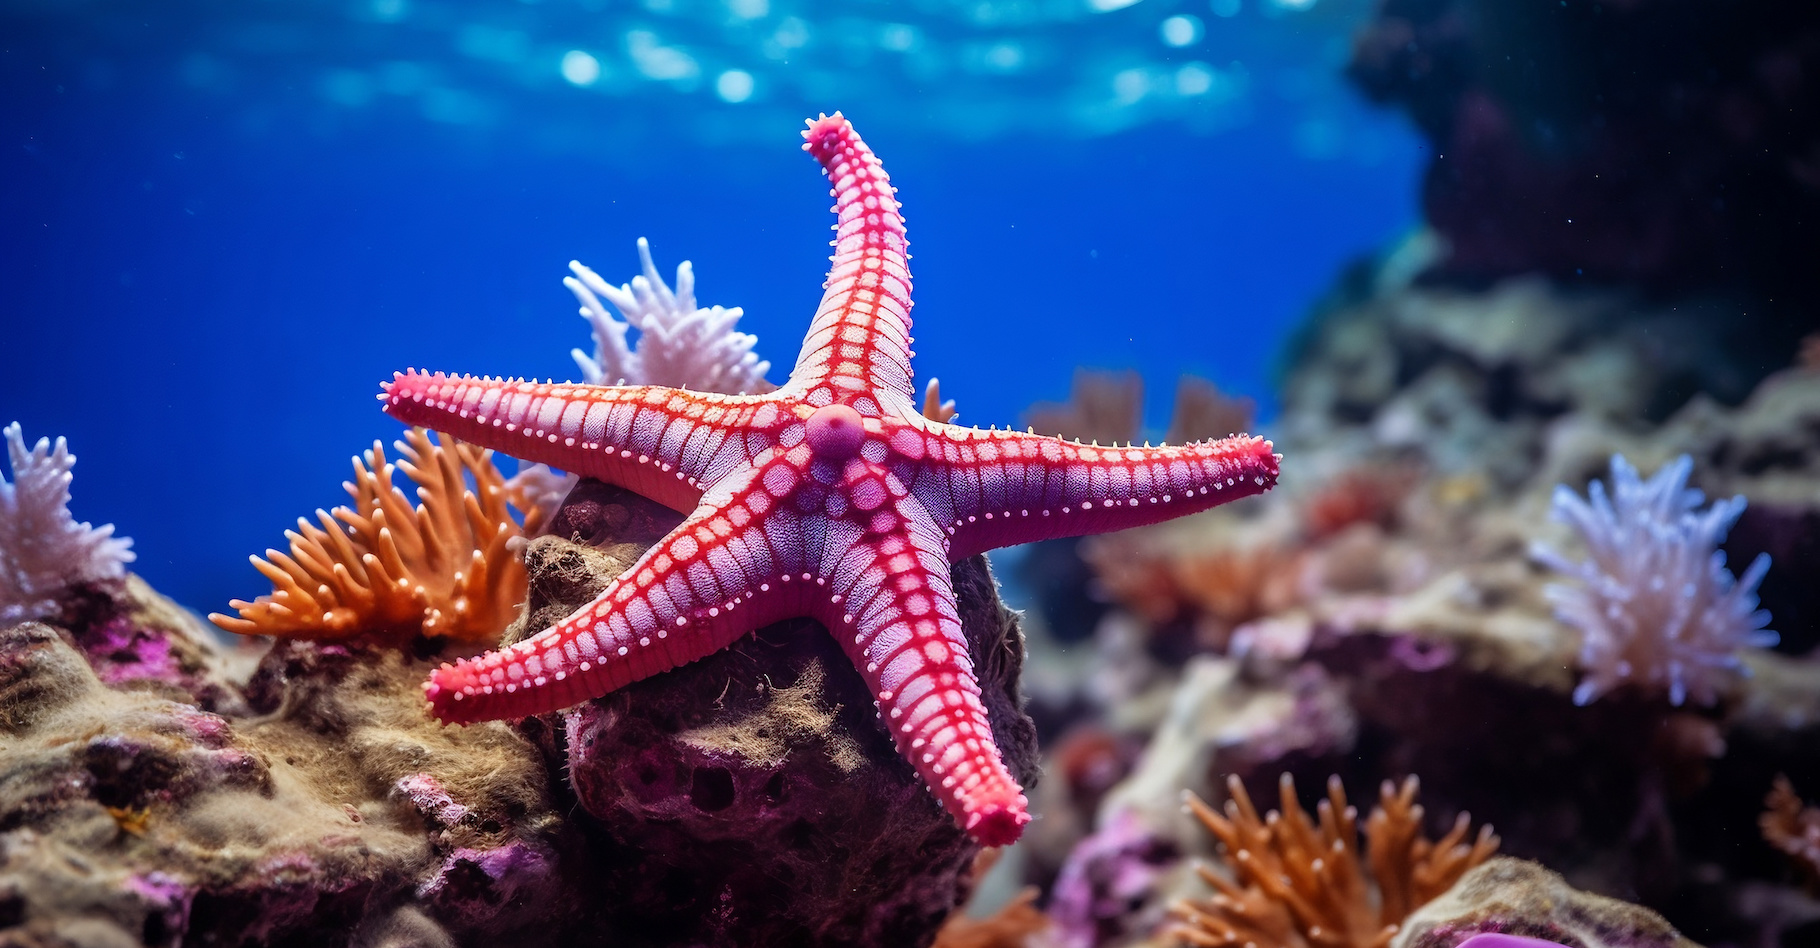 Des chercheurs de l’université de Stanford (États-Unis) avancent que les étoiles de mer ne sont presque que des têtes rampantes. © Hoang, Adobe Stock